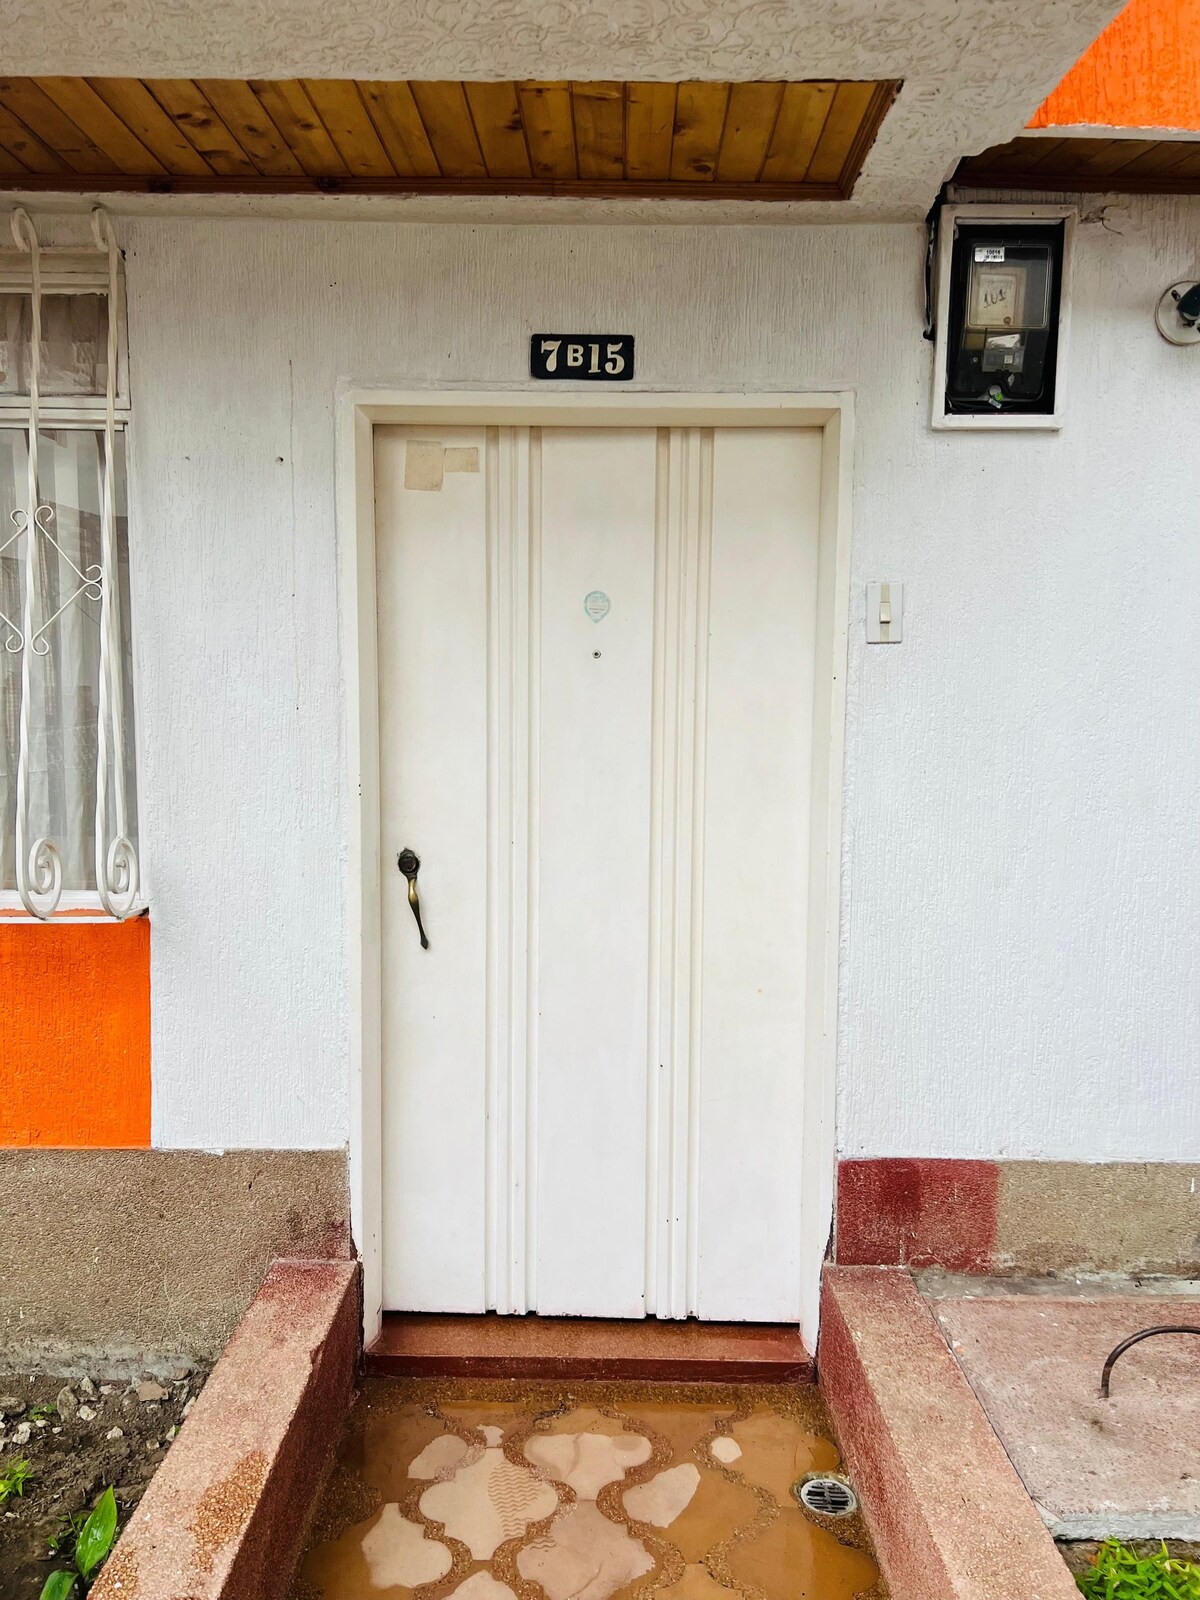 黑山Quindío的橙色房屋